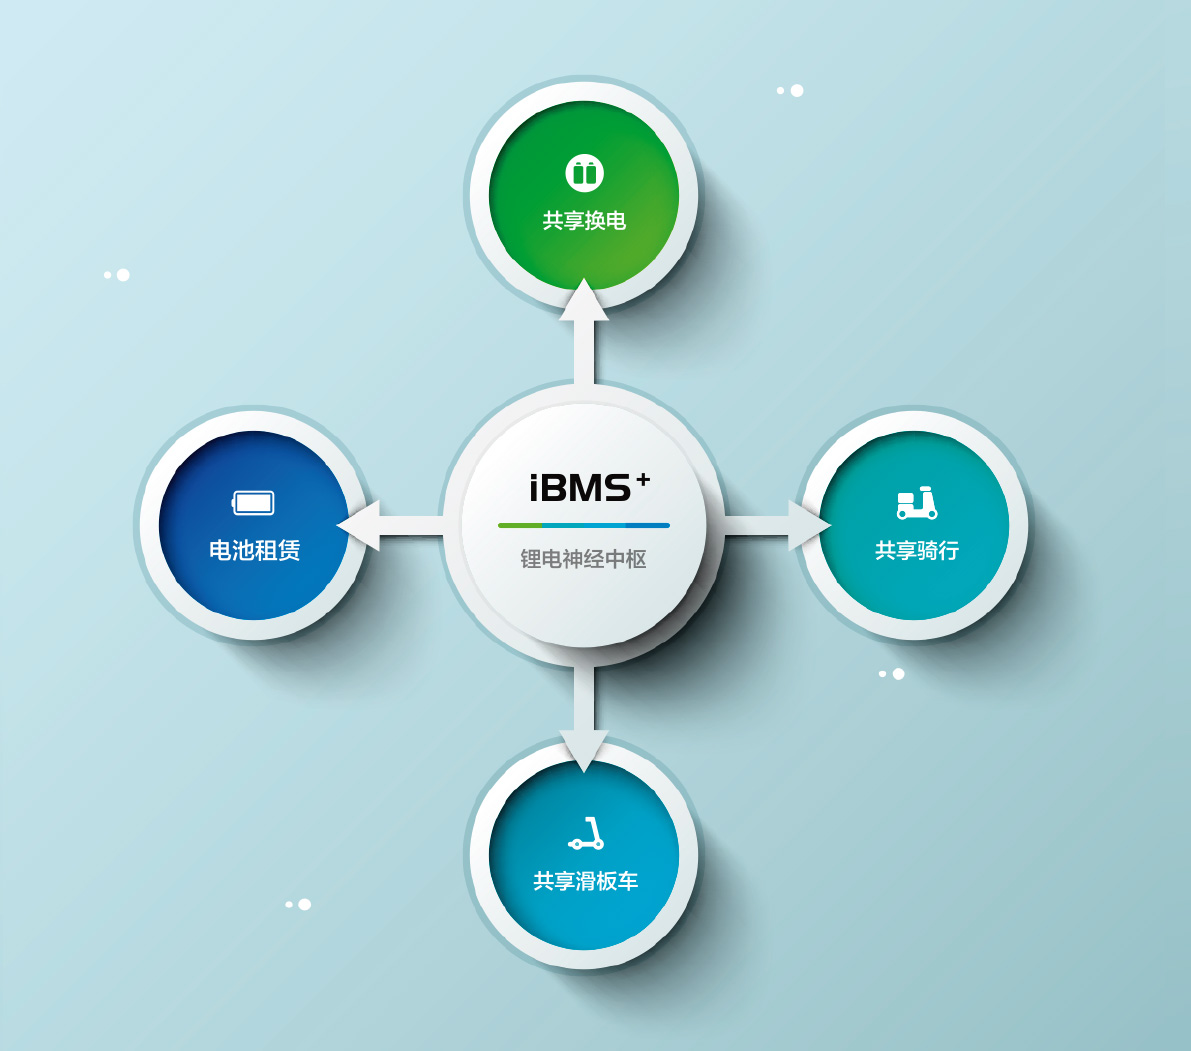 iBMS 上层应用